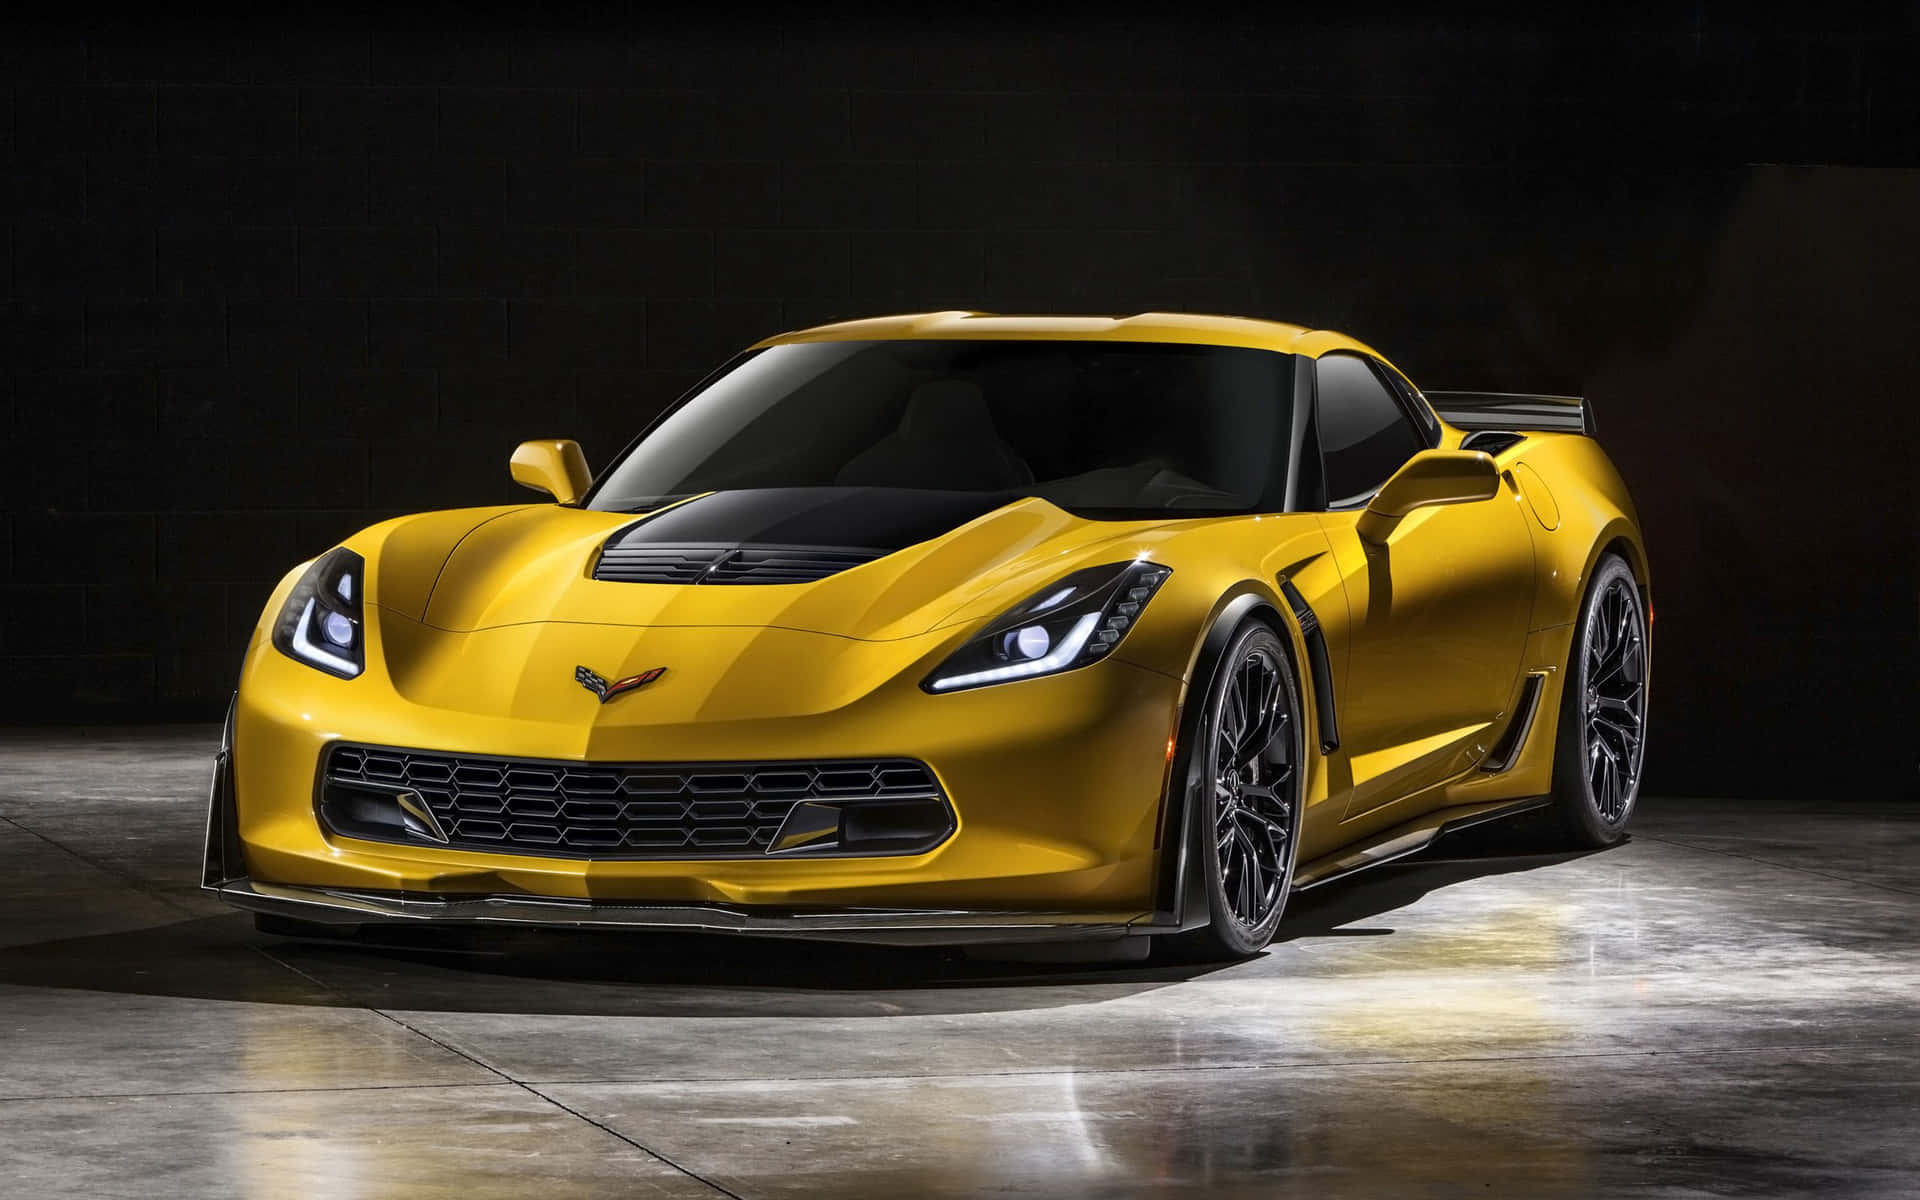 Klassiskamerikansk Muskel: Corvette.